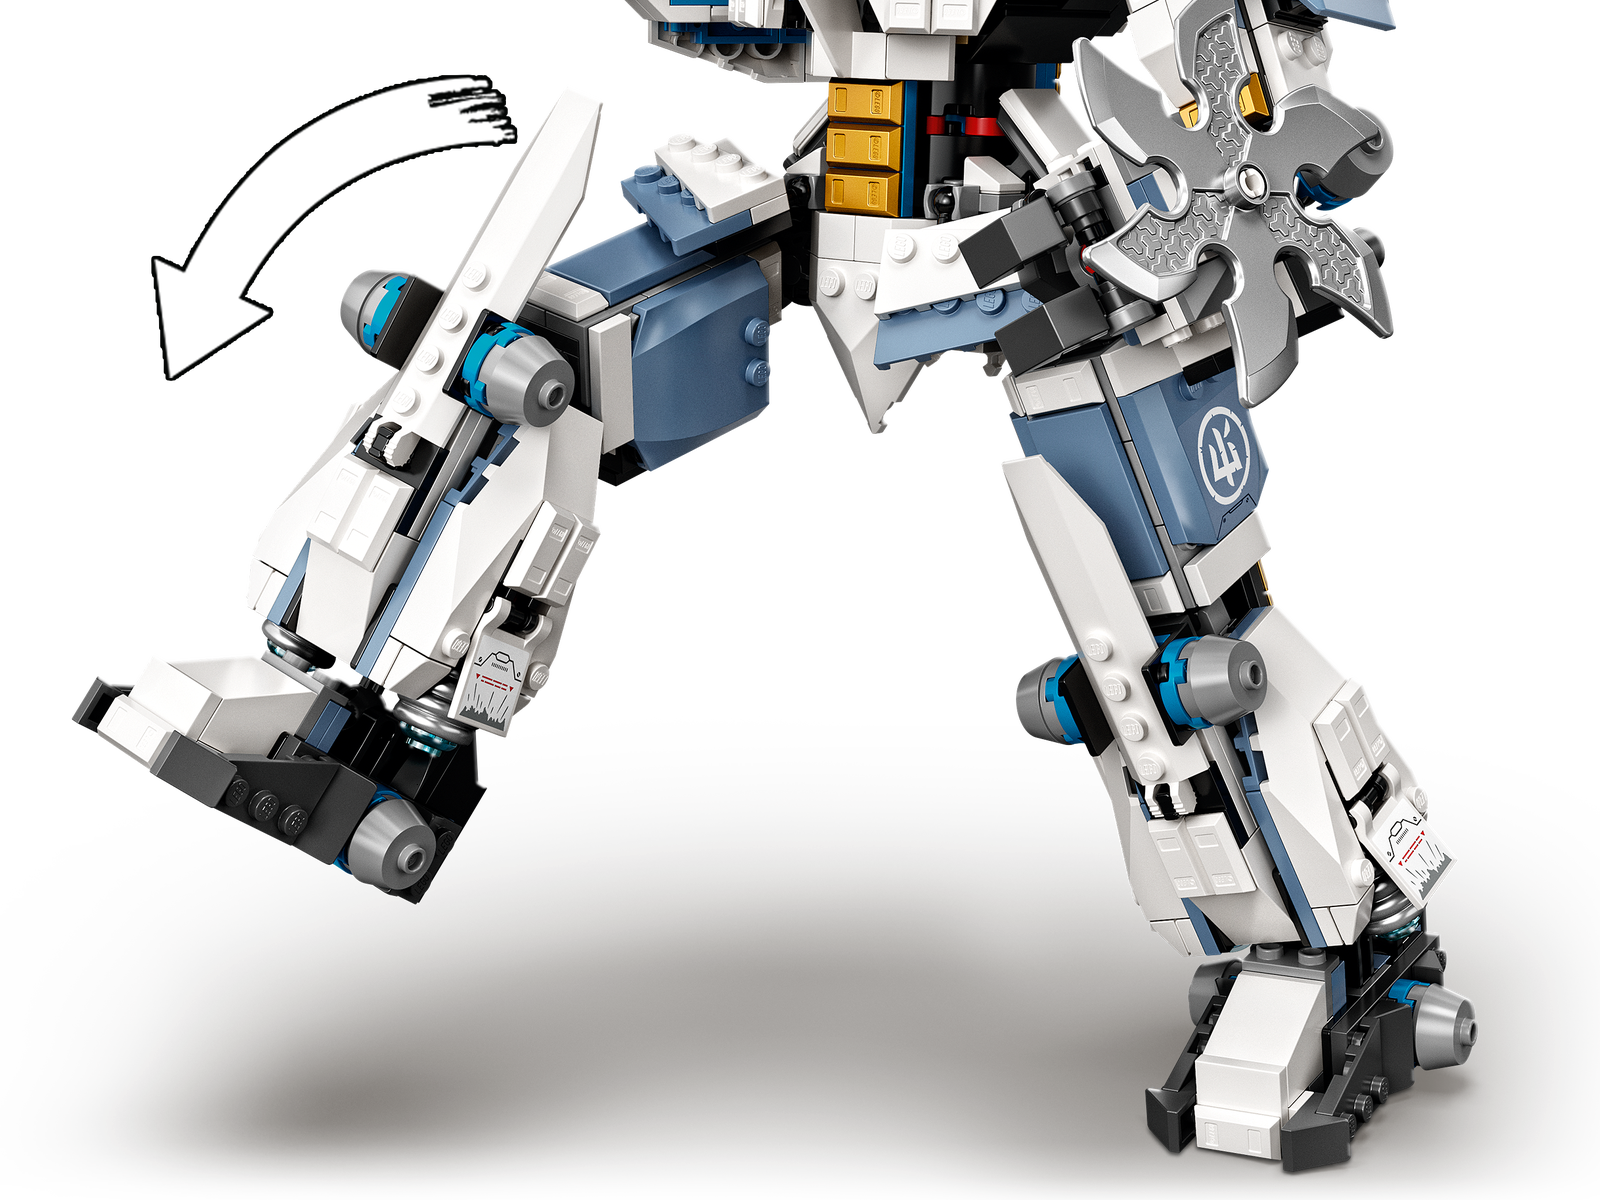 LEGO Ninjago Zane's Titan Mech Battle 71738